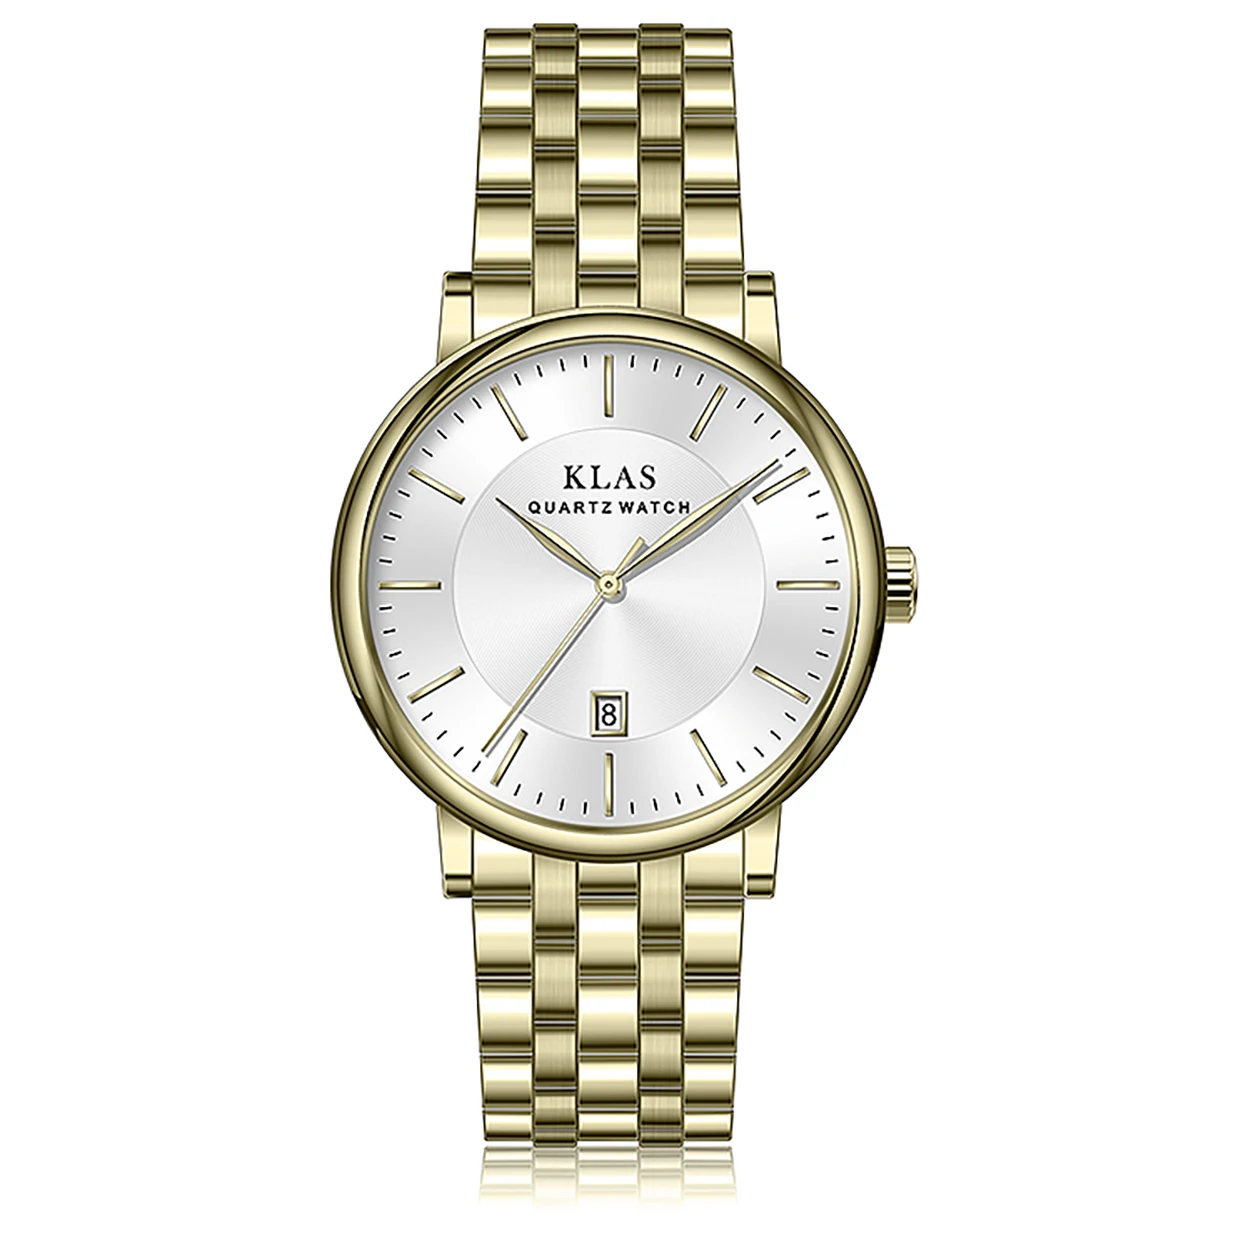 

Человеком вкус календарь Водонепроницаемый кварцевые часы мужские Бизнес часы KLAS брендовые часы водонепроницаемые